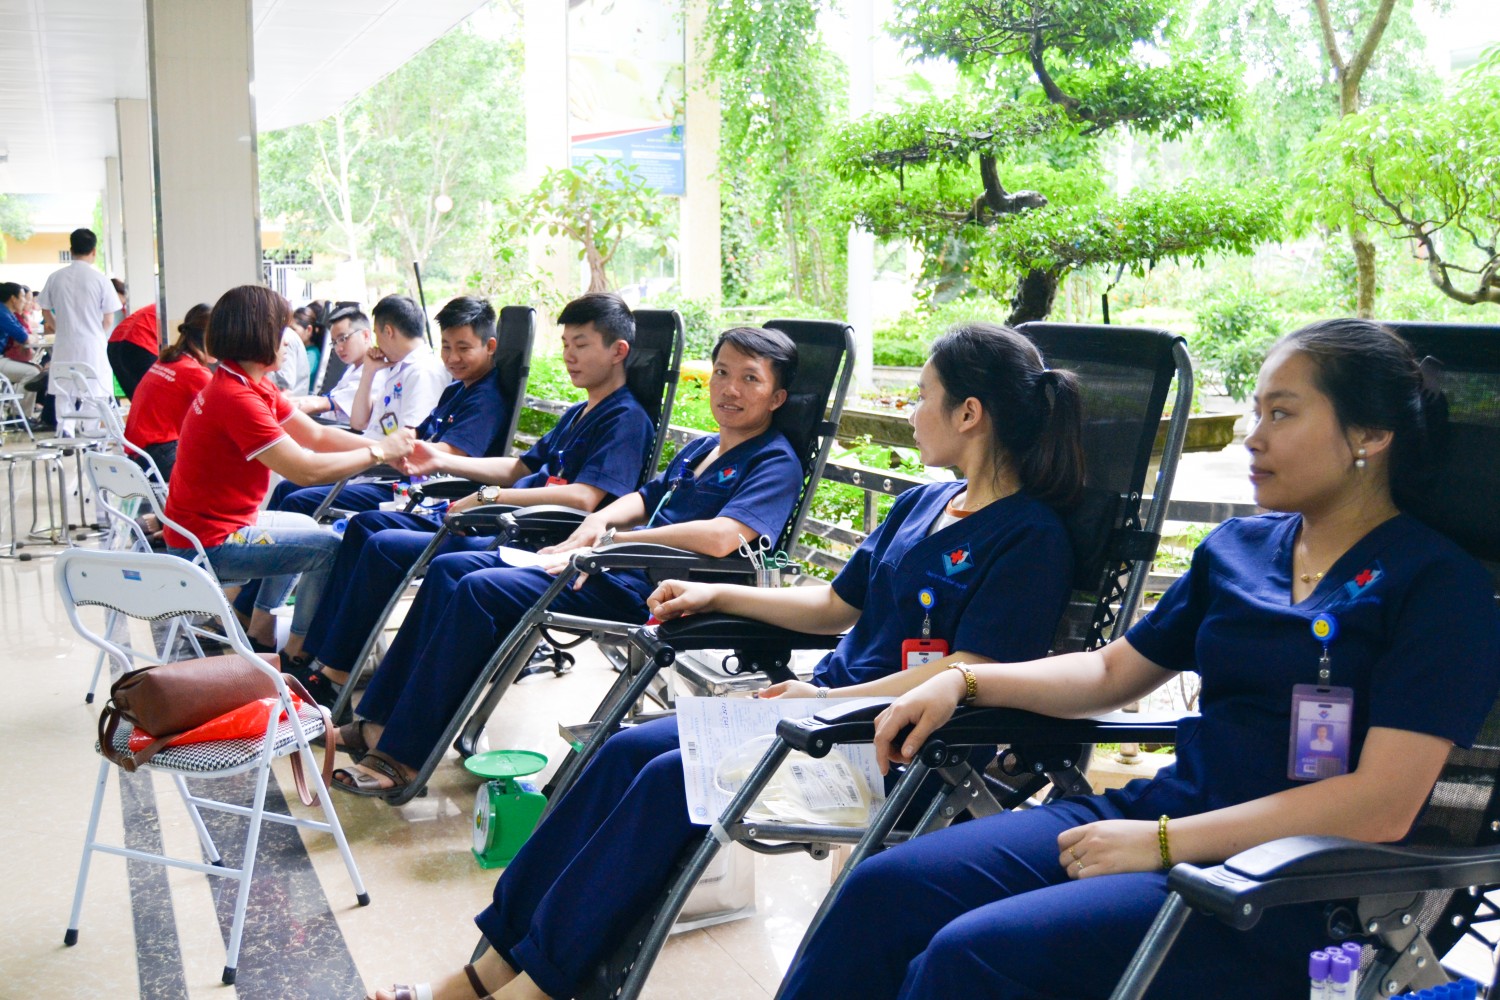 BVĐK Hùng Vương ngày hội hiến máu Tháng 5 – 2019